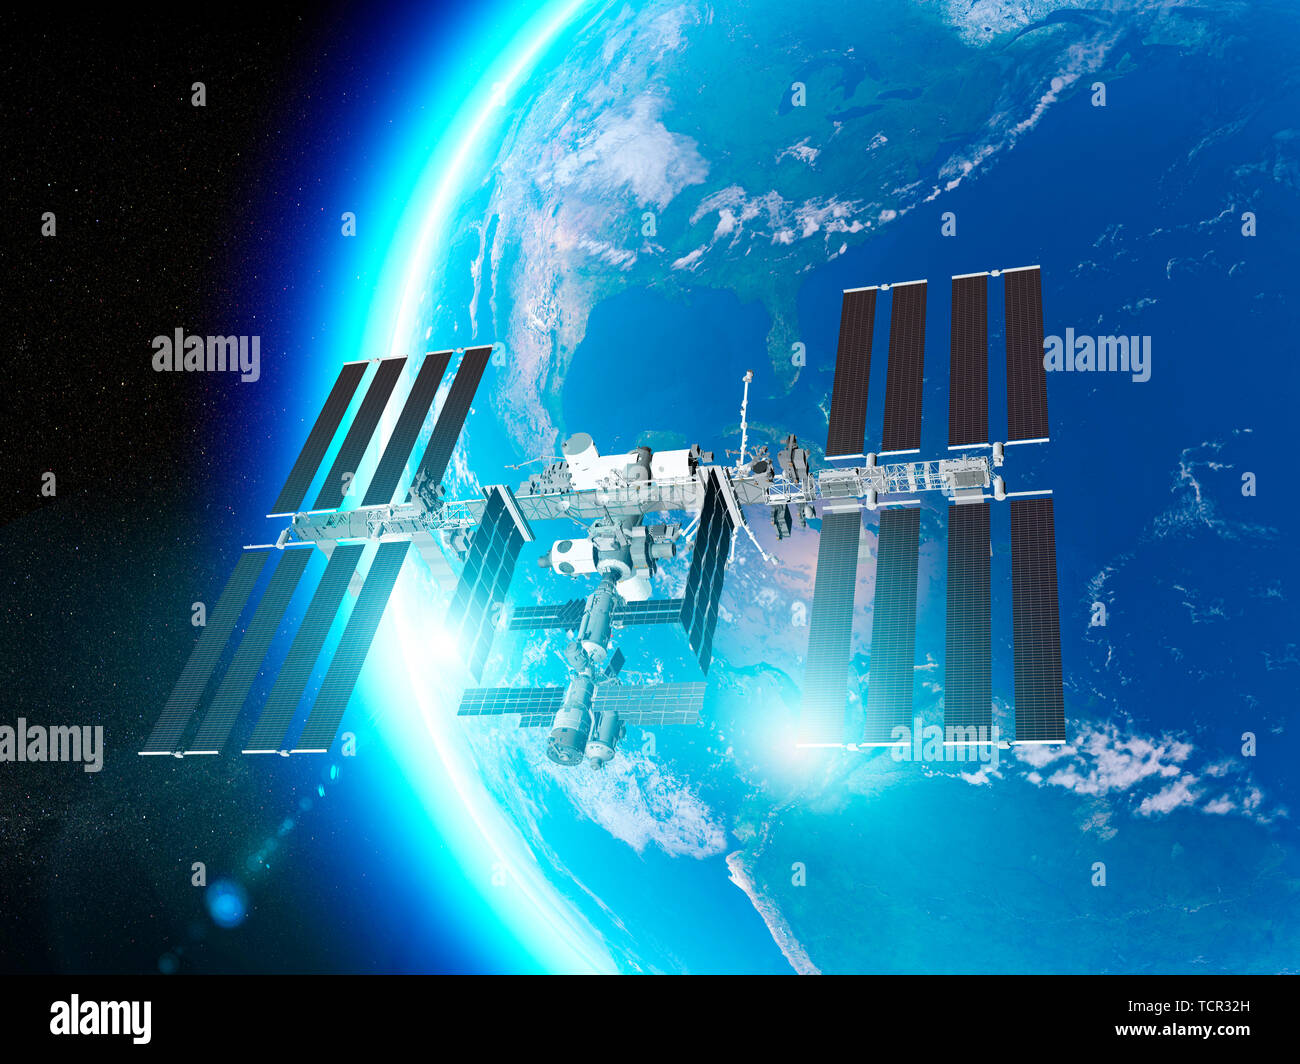 La Station spatiale internationale (ISS) est une station spatiale, ou un satellite artificiel habitable, en orbite terrestre basse. Satellite de la terre et de l'ISS Banque D'Images